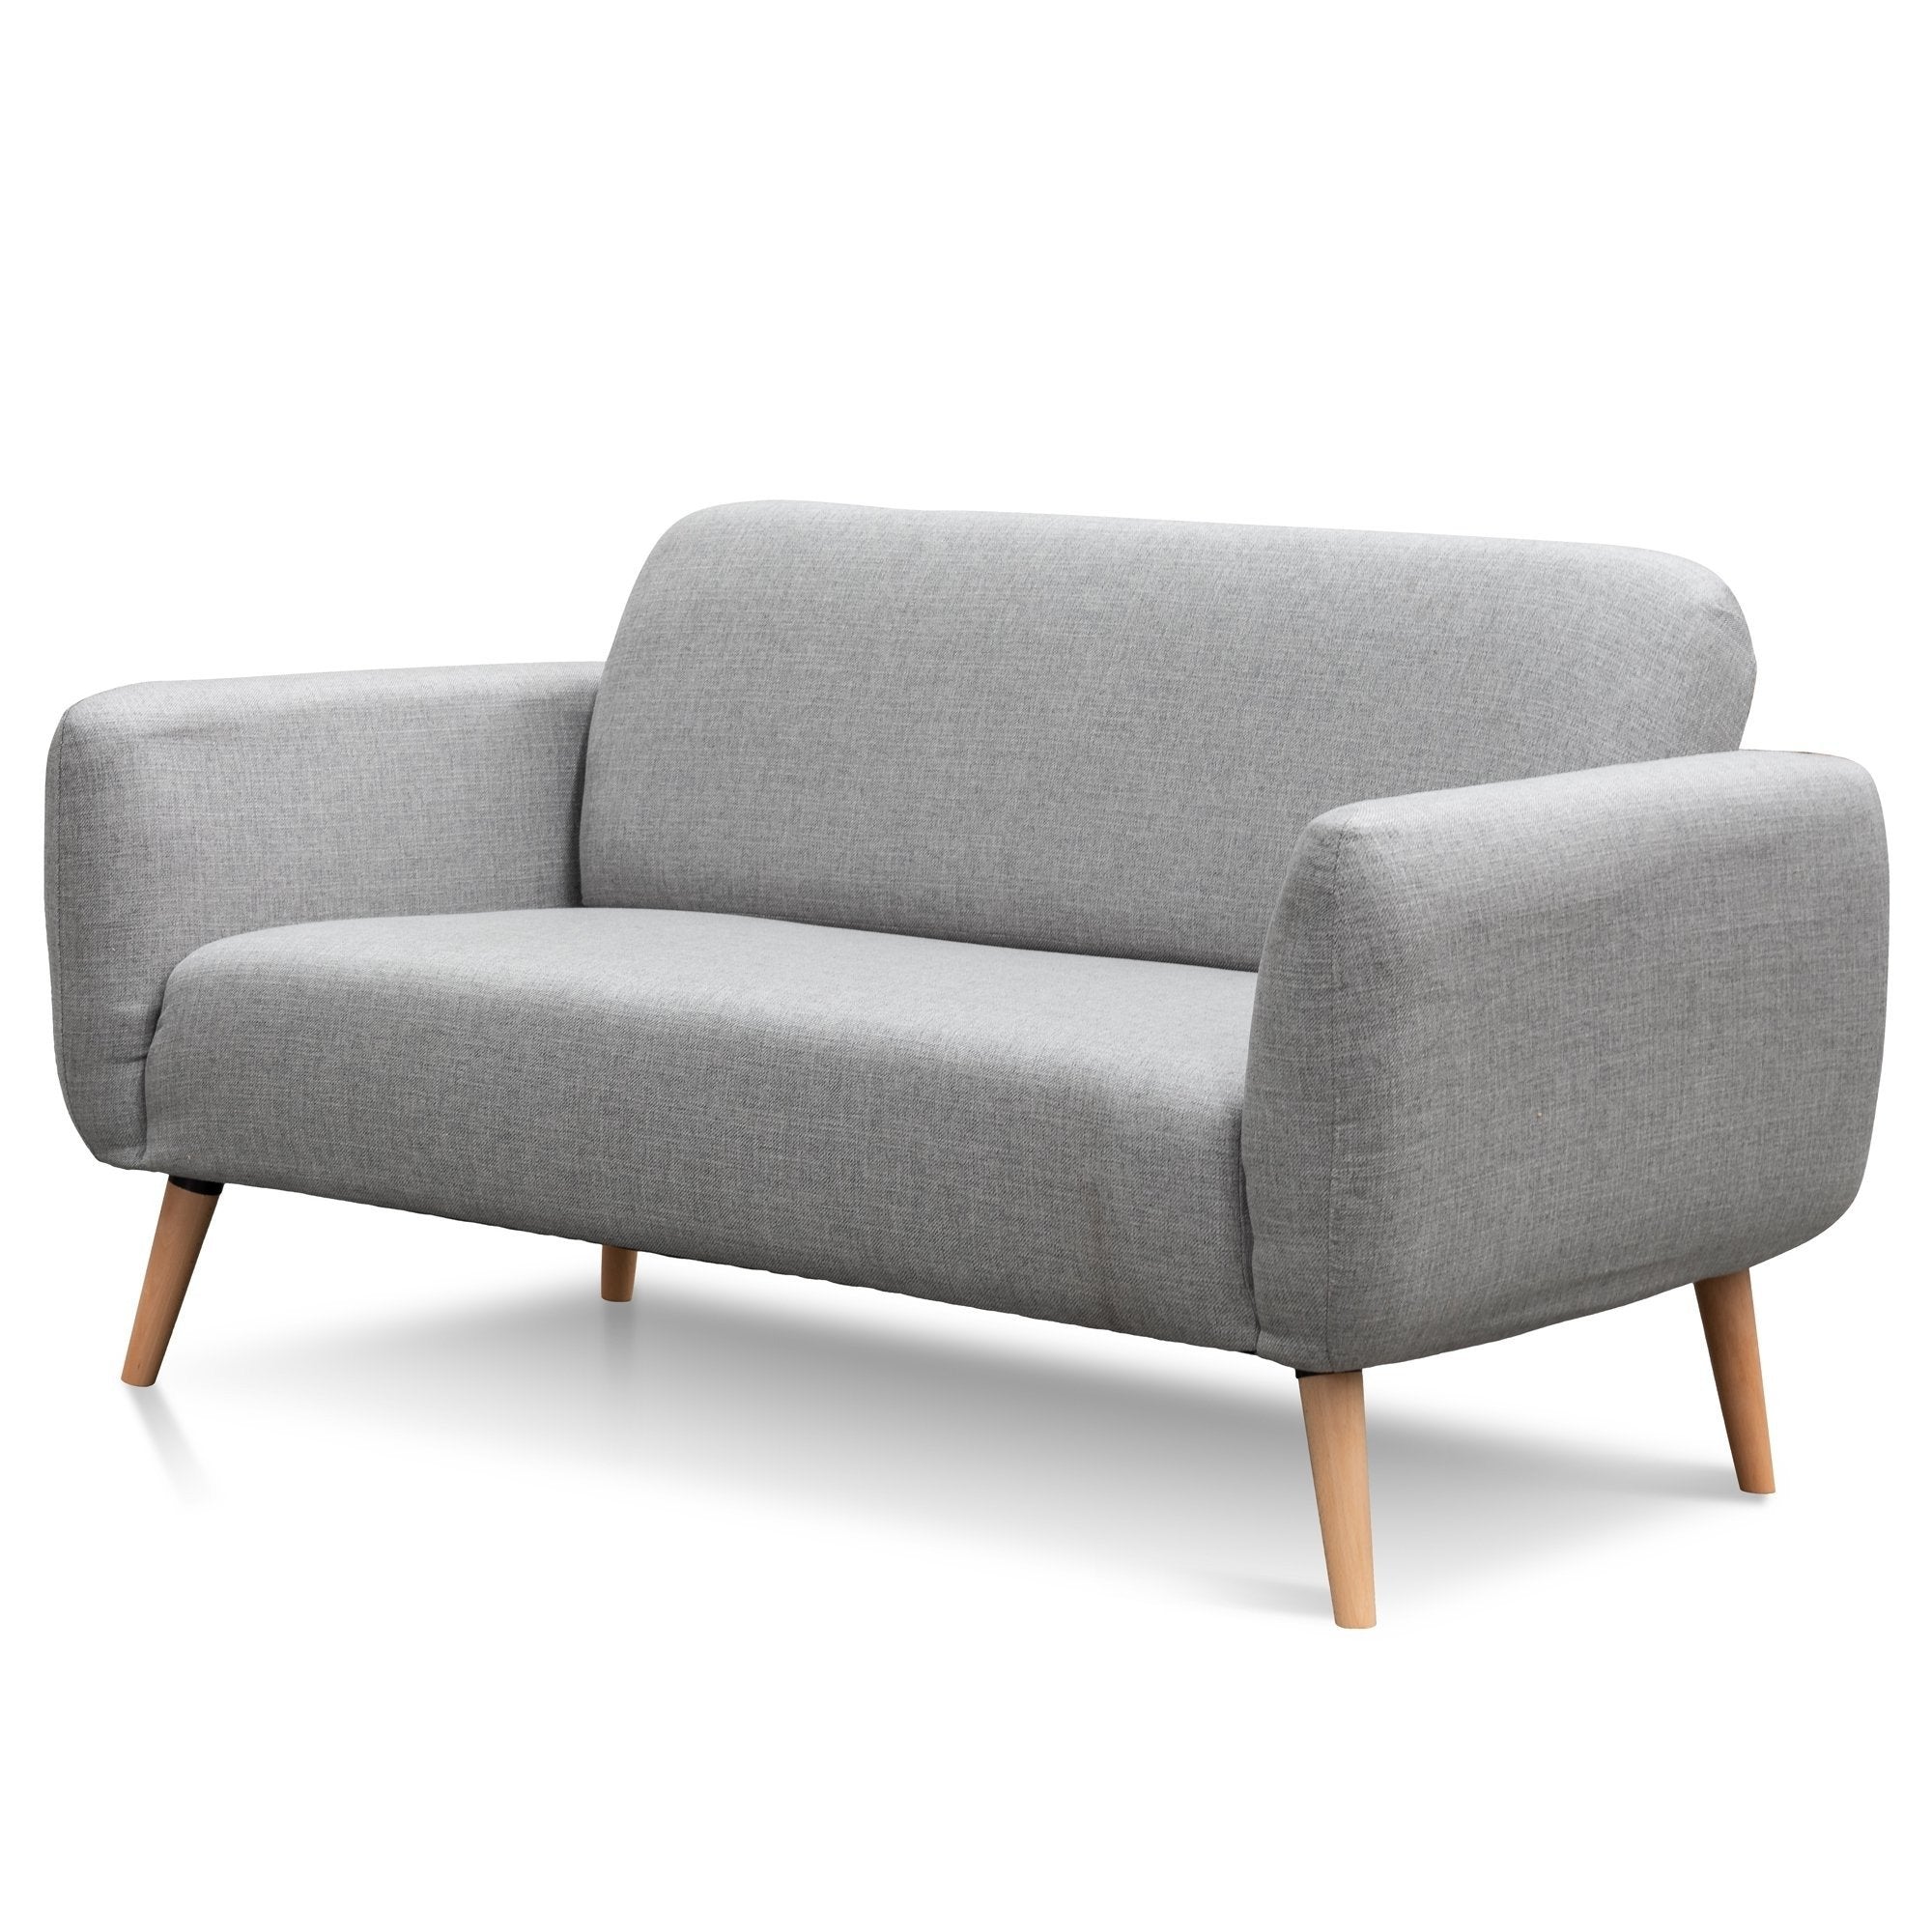 Sarah - 2 Seater Sofa - Grey fabric